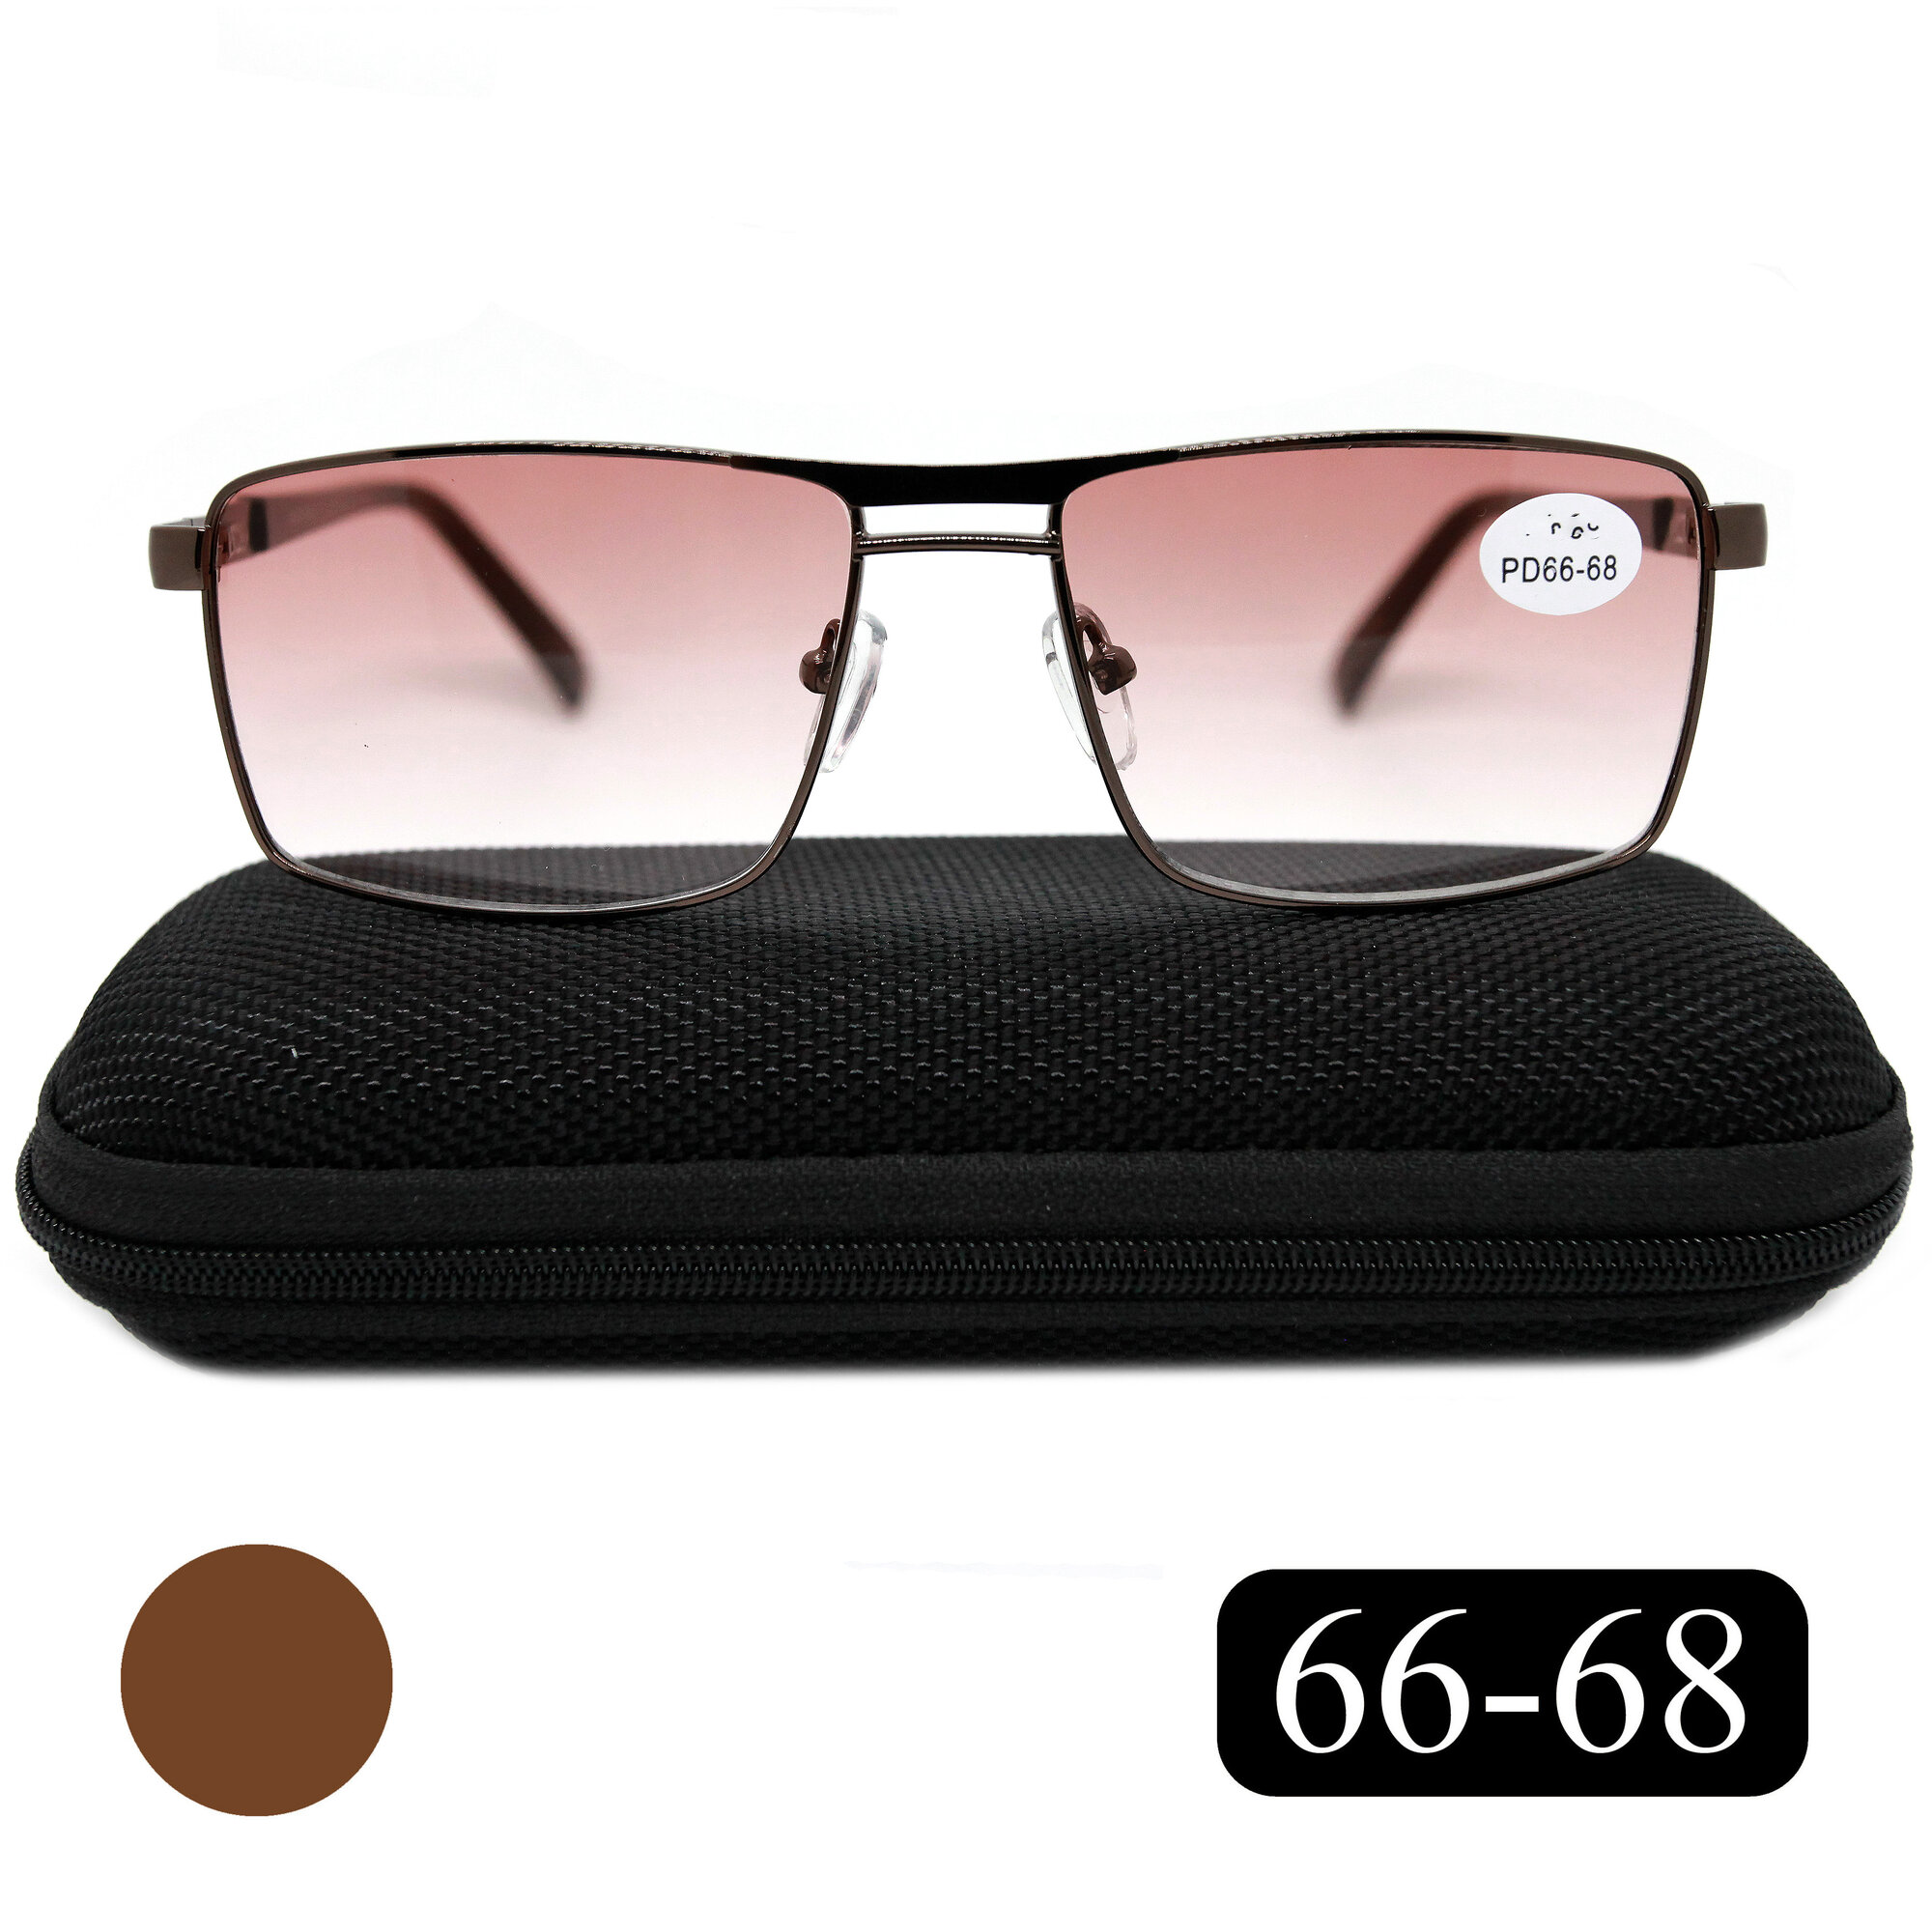 Мужские очки расстояние 66-68 с тонировкой для дали (-3.00) SALIVIO 5009 C1 цвет черный с футляром РЦ 66-68